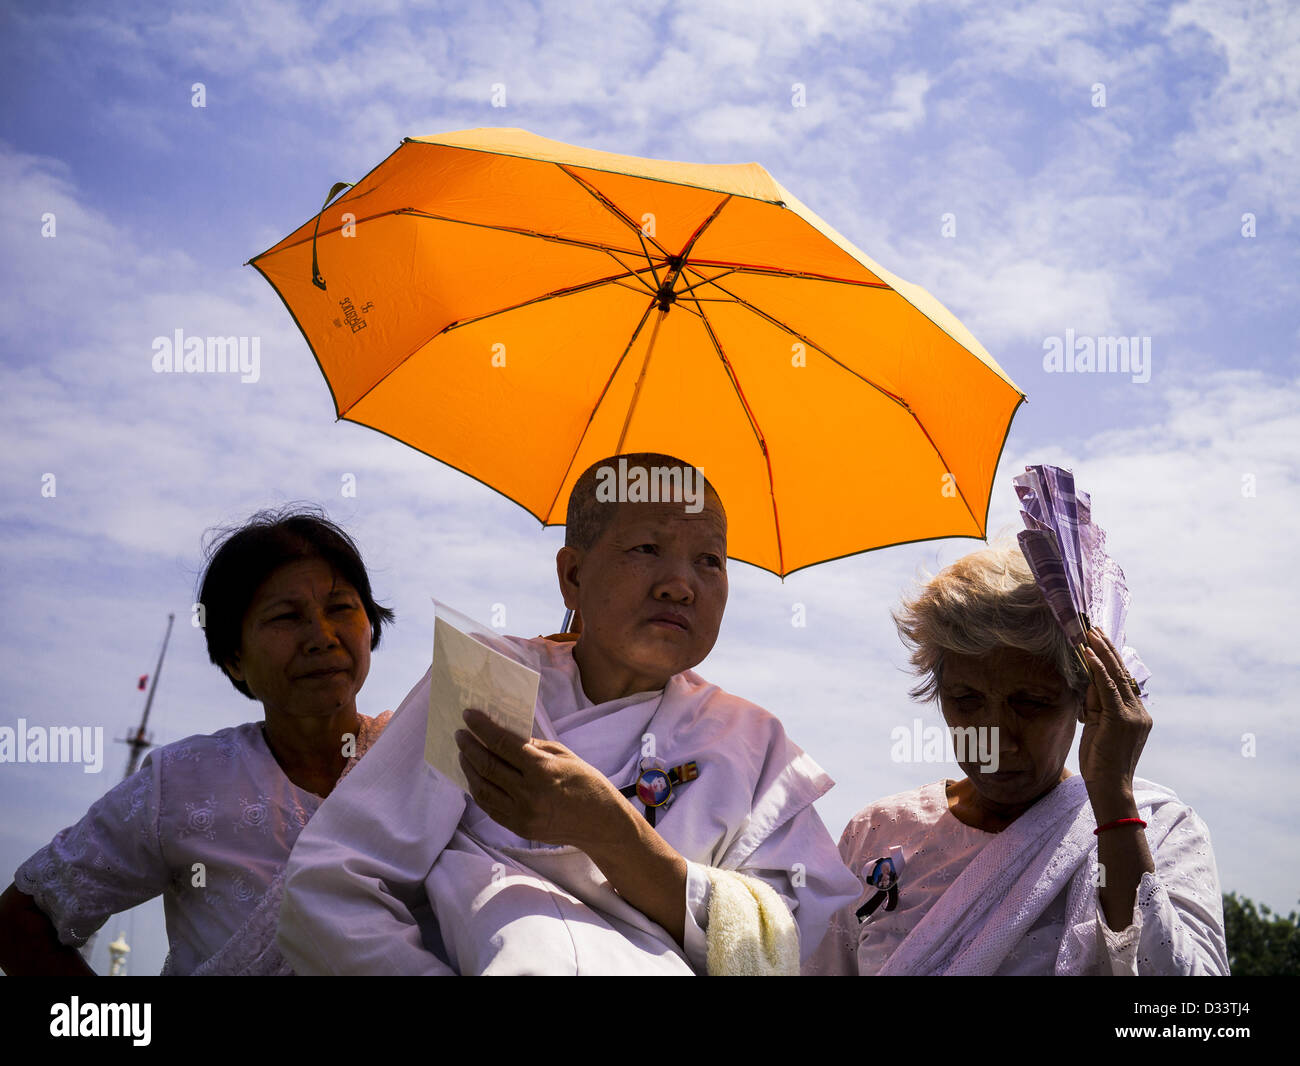 Febbraio 2, 2013 - Phnom Penh Cambogia - donne cambogiane lutto defunto re Norodom Sihanouk prendere ombra sulla piazza di fronte al Palazzo Reale durante il periodo del lutto per Sihanouk, che hanno governato la Cambogia, dall'indipendenza nel 1953 fino a che egli è stato rovesciato da un golpe militare nel 1970. Sihanouk è morto a Pechino, in Cina, in ottobre 2012. (Credito Immagine: © Jack Kurtz/ZUMAPRESS.com) Foto Stock